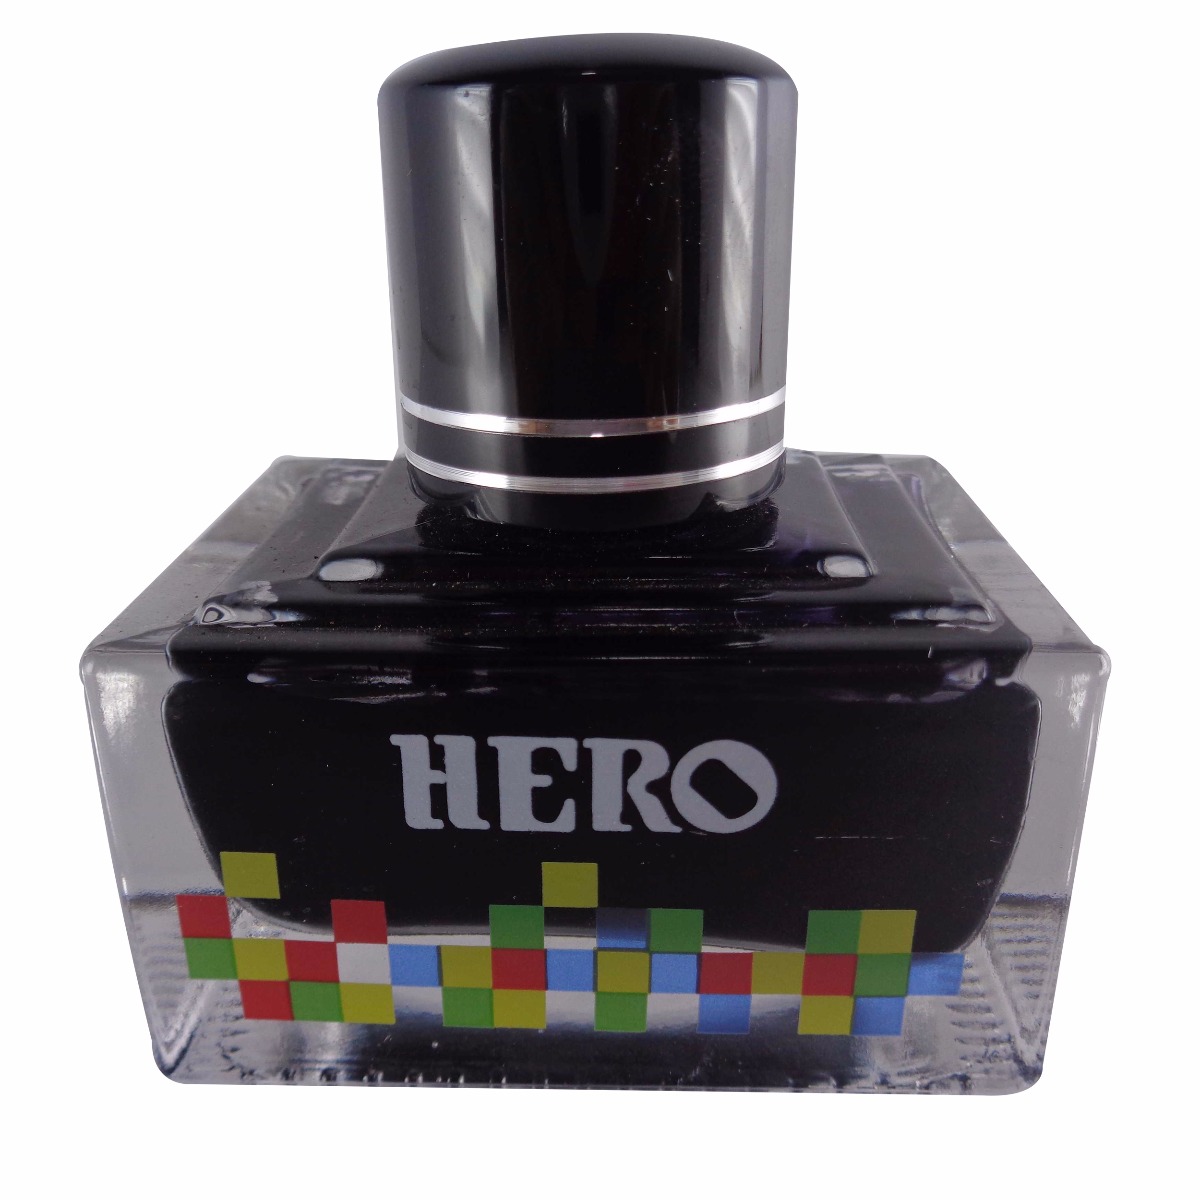 Hero No. 7105  Model: 70027 Extra color ink Black color ink bottle